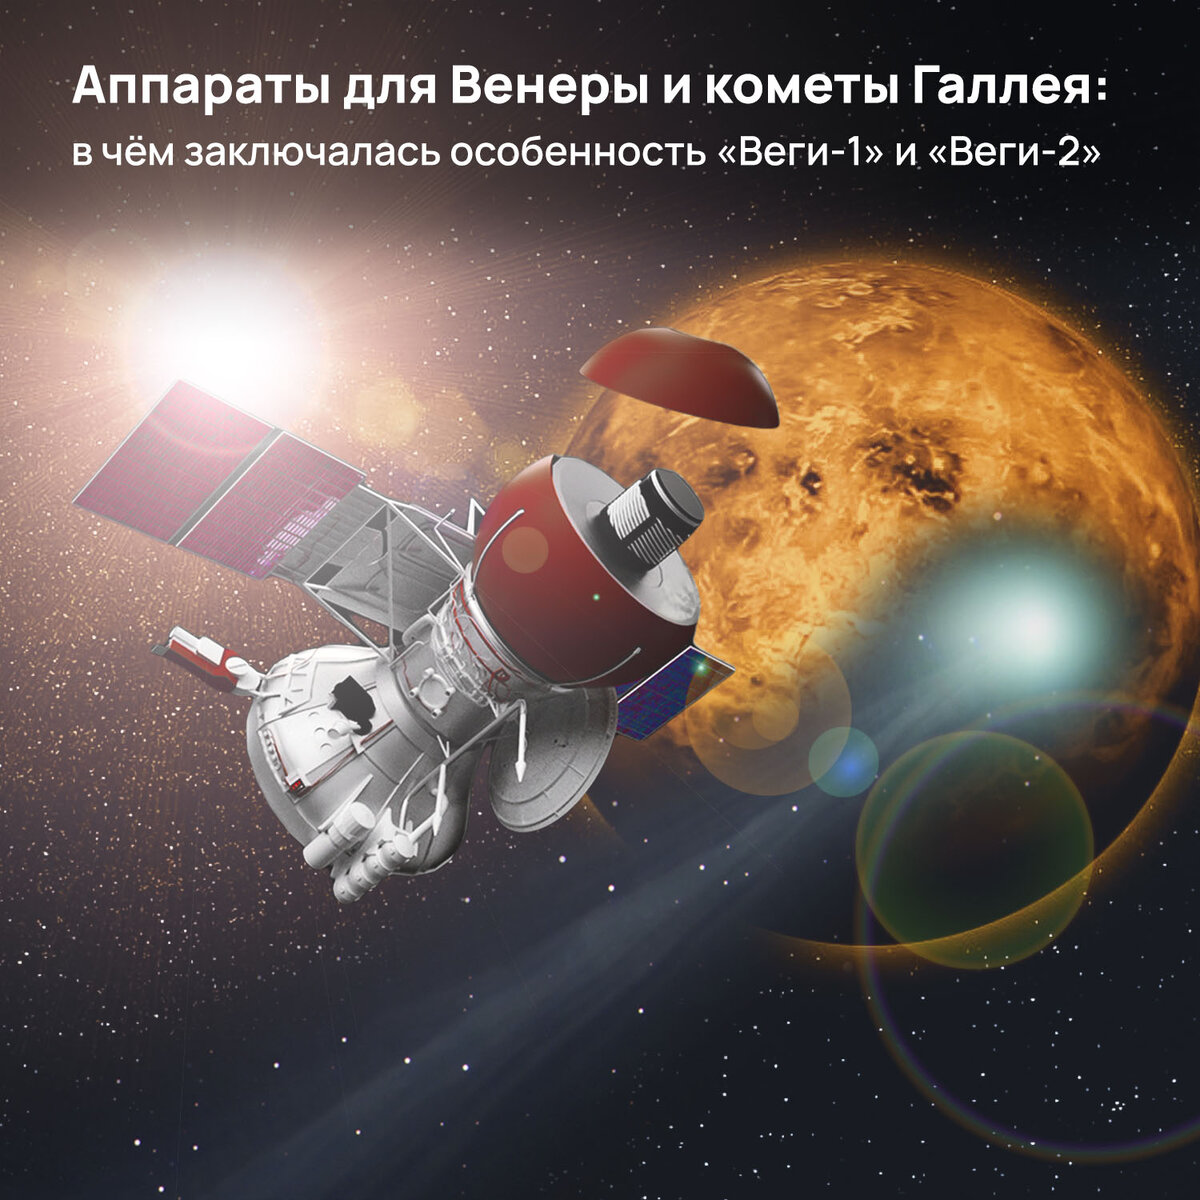 11 июня 1985 года автоматическая межпланетная станция «Вега-1» достигла окрестностей Венеры. К этому времени СССР успешно осуществил запуск целых 16 космических аппаратов «Венера».